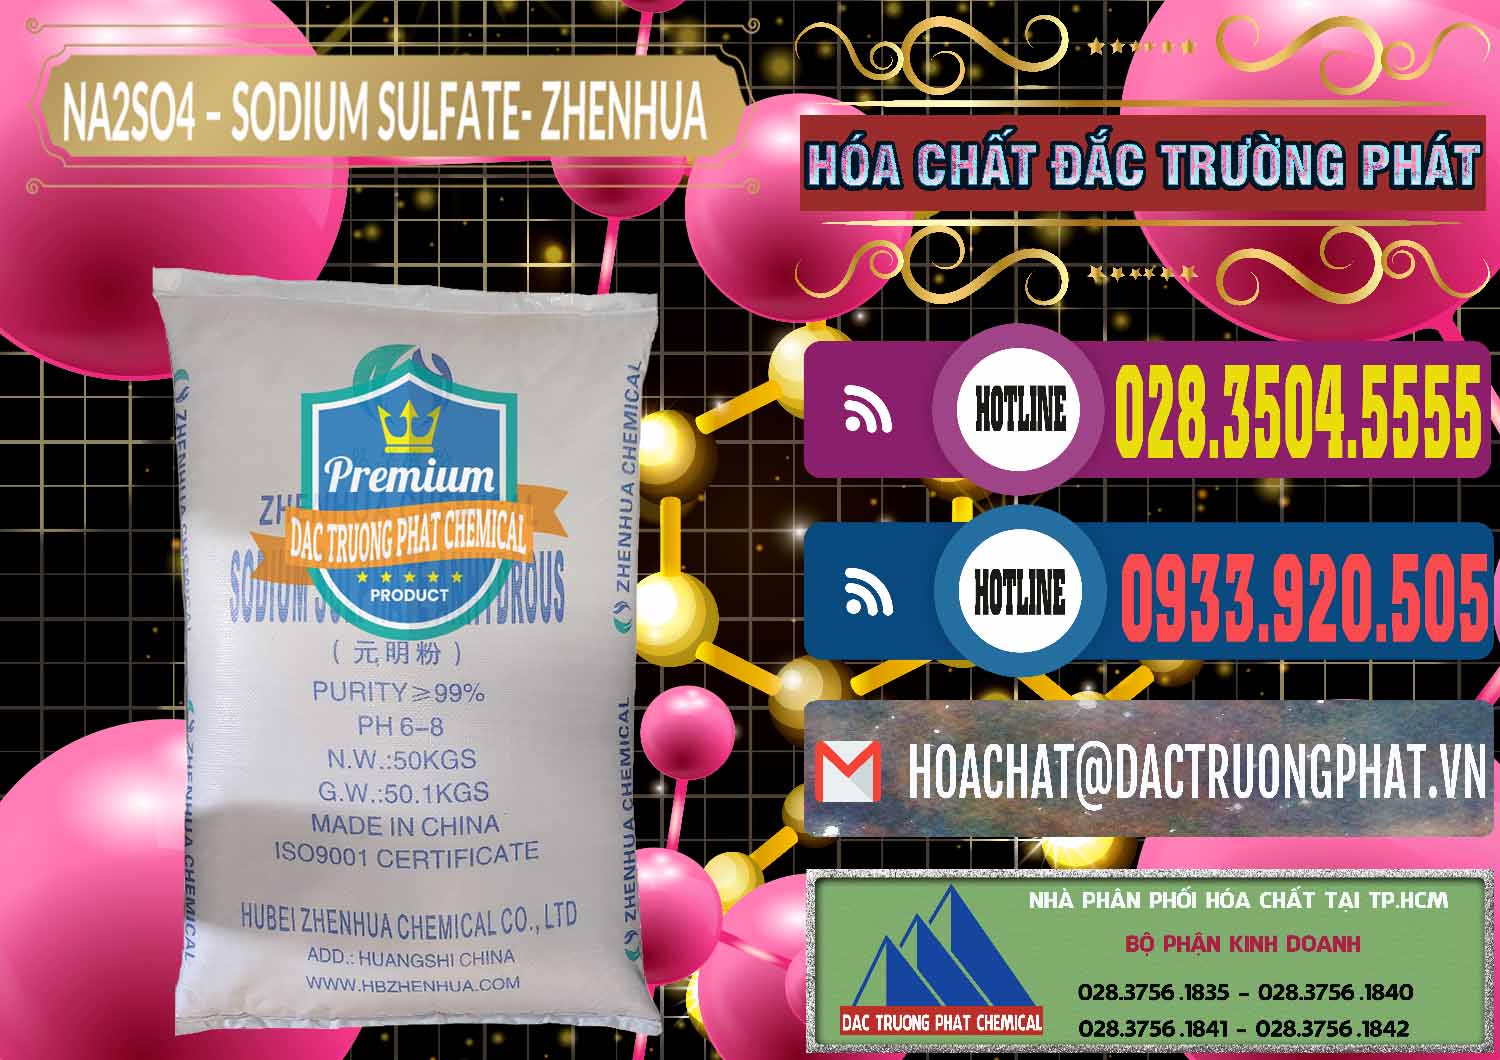 Chuyên phân phối - bán Sodium Sulphate - Muối Sunfat Na2SO4 Zhenhua Trung Quốc China - 0101 - Chuyên bán và cung cấp hóa chất tại TP.HCM - muabanhoachat.com.vn